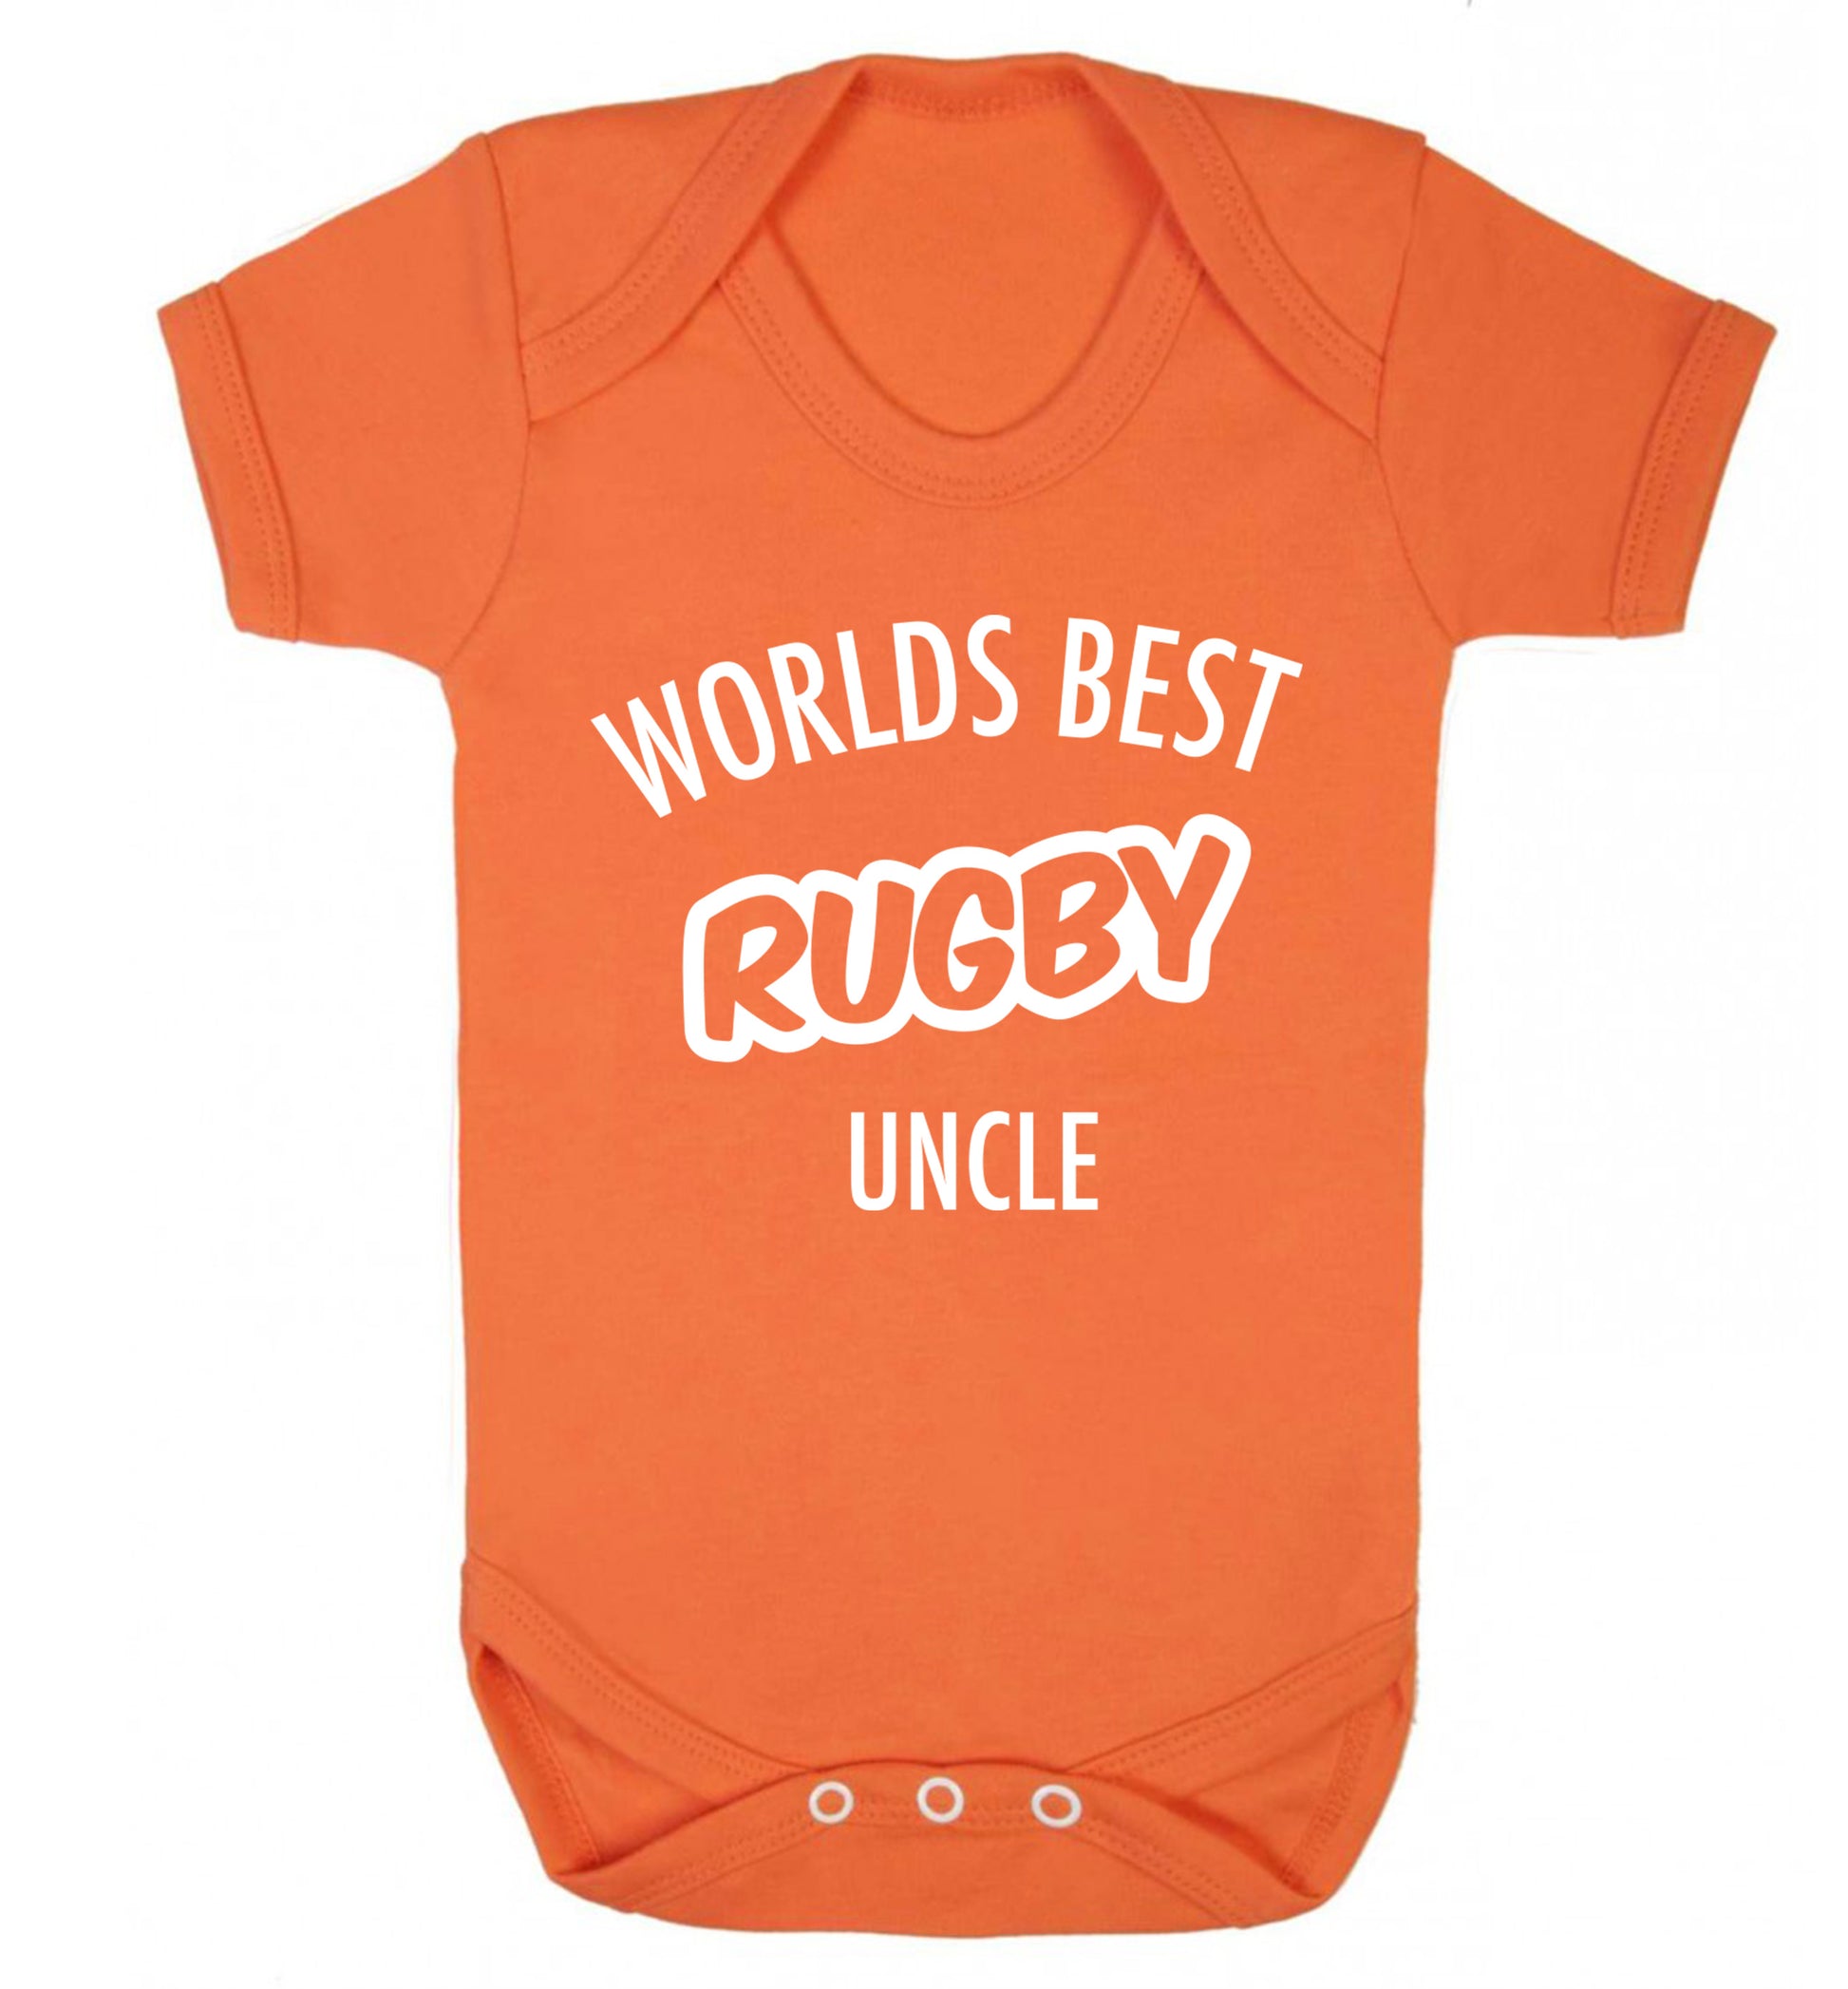 Worlds best rugby uncle Baby Vest orange 18-24 months